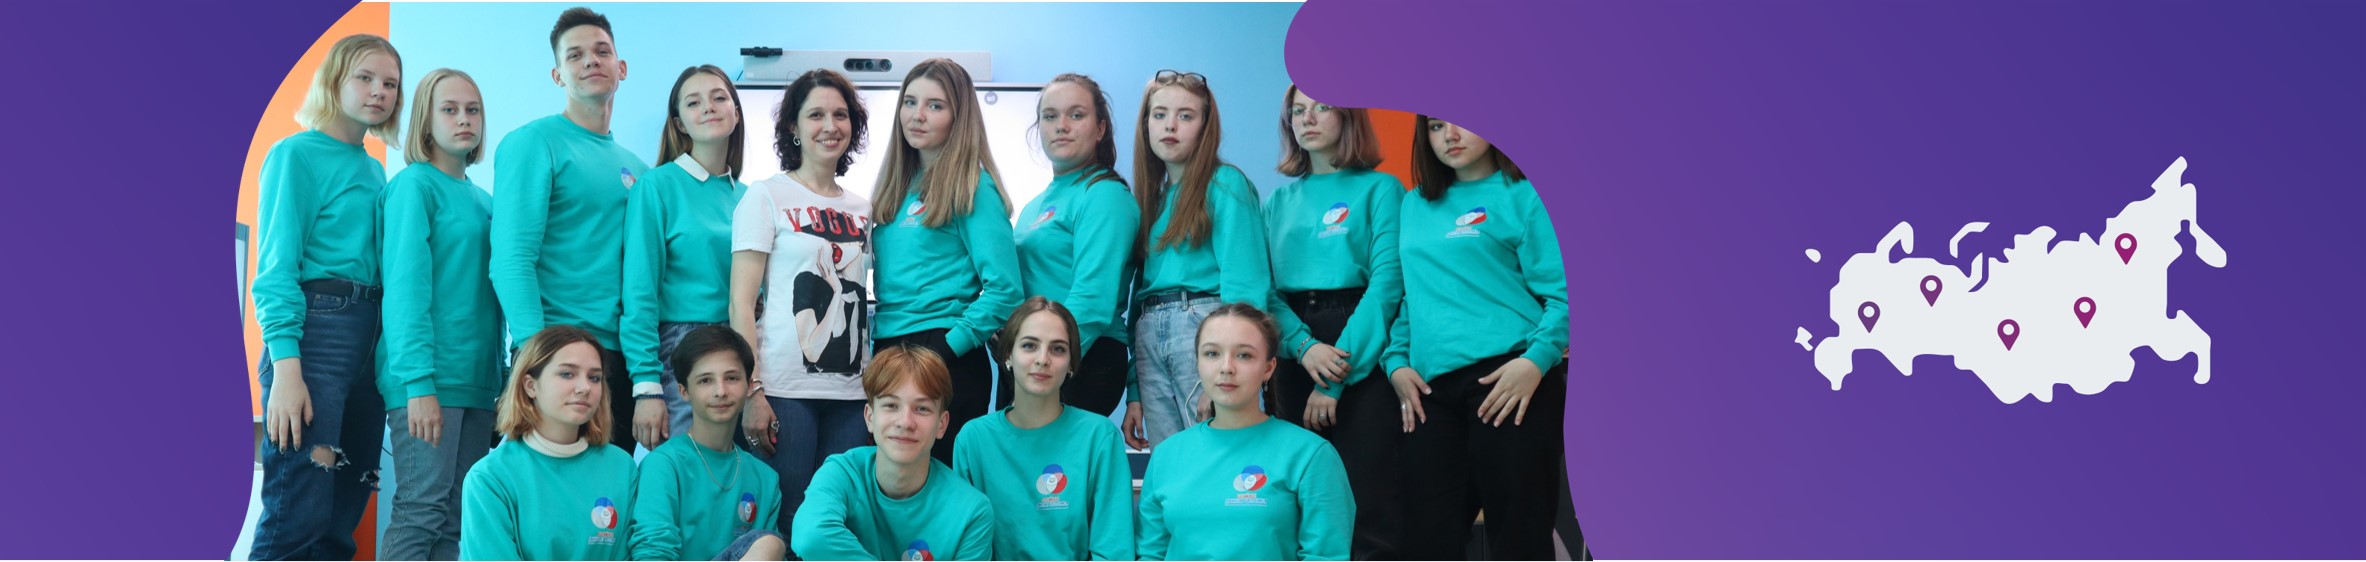 Онлайн-встреча представителей школьных волонтёрских объединений Республиканского детского актива #РДШ13 | Республика Мордовия